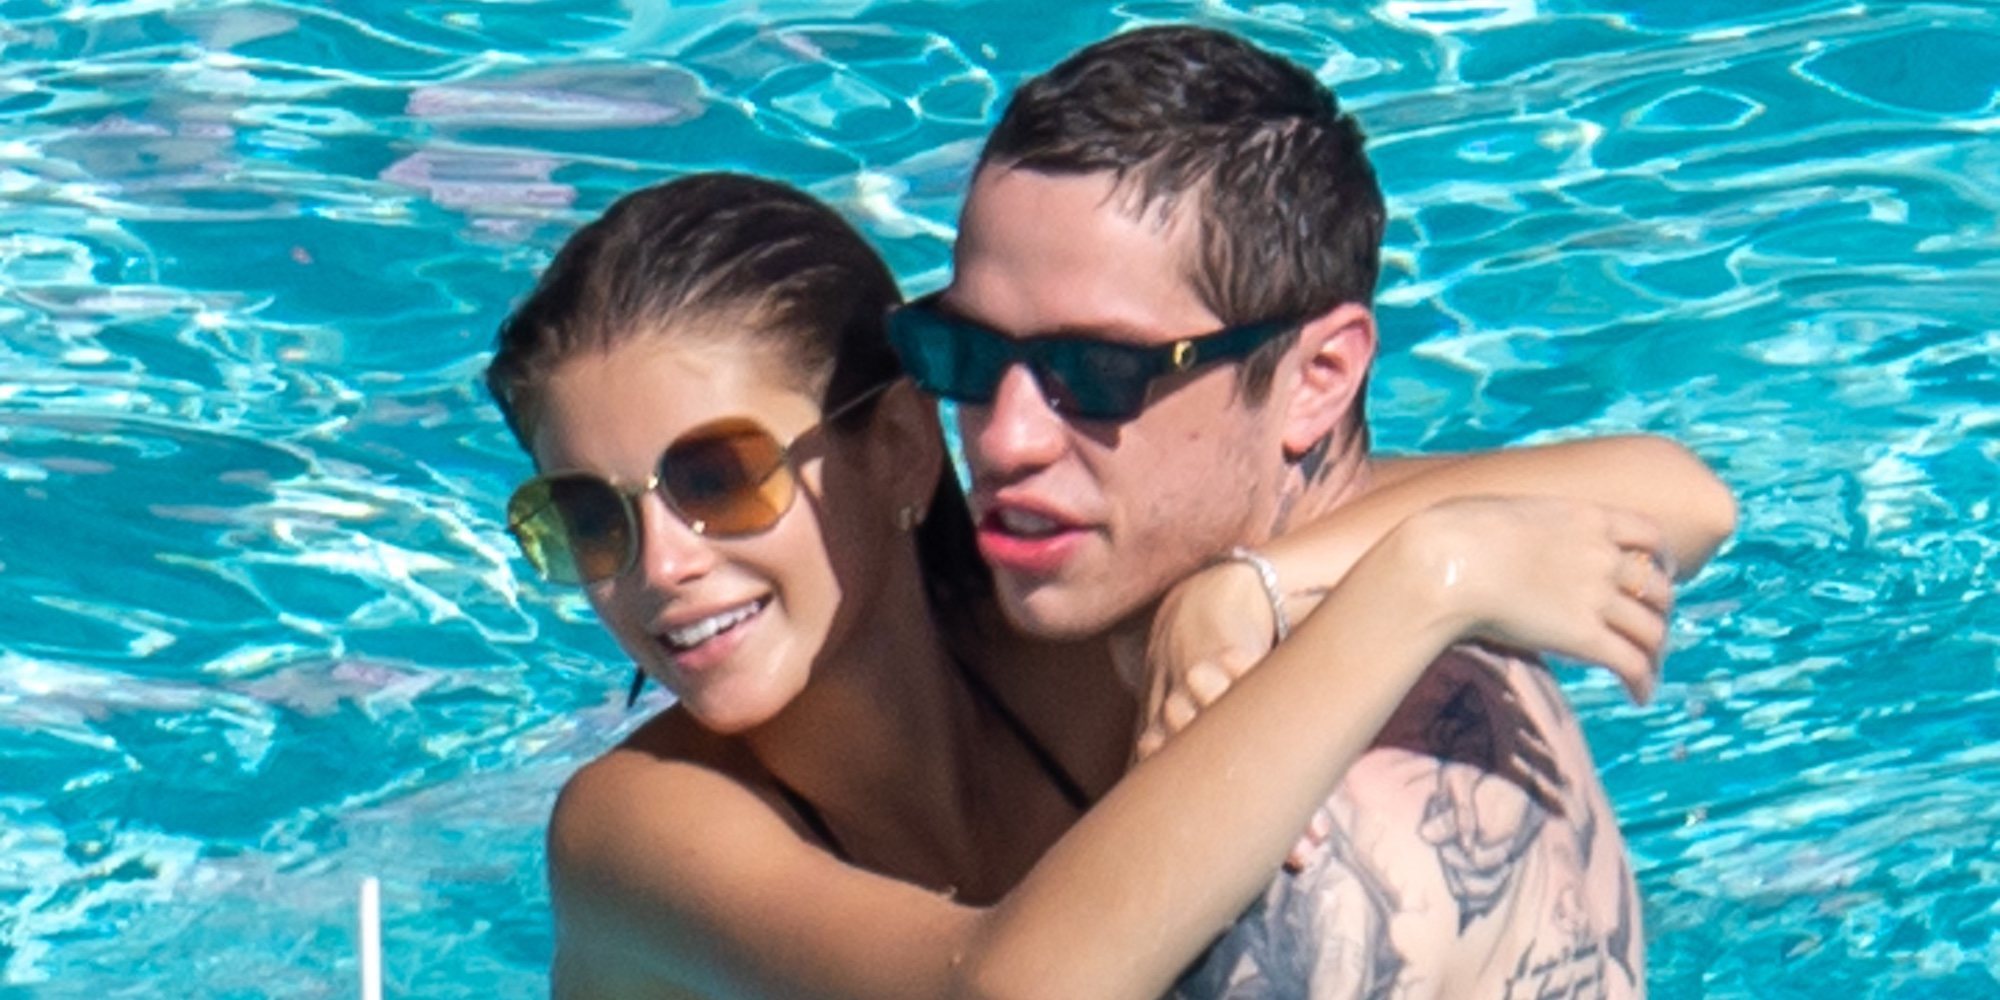 El pasional día de piscina de Pete Davidson y Kaia Gerber en Miami